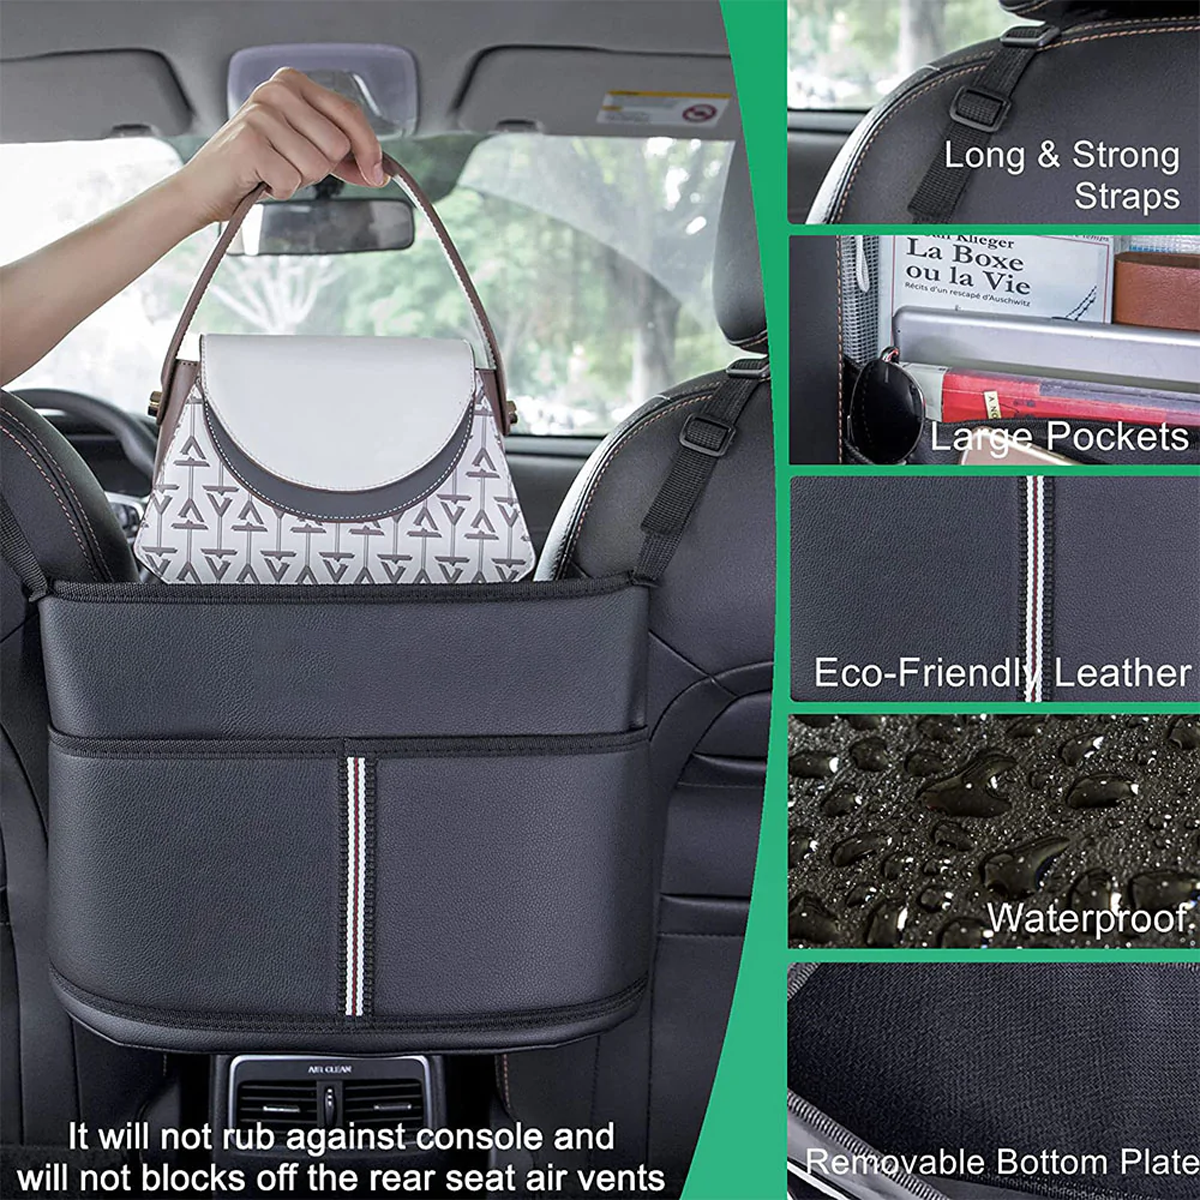 Car Purse Holder for Car Handbag Holder Between Seats Premium PU Leather, Custom Fit For Car, Hanging Car Purse Storage Pocket Back Seat Pet Barrier DLMT223